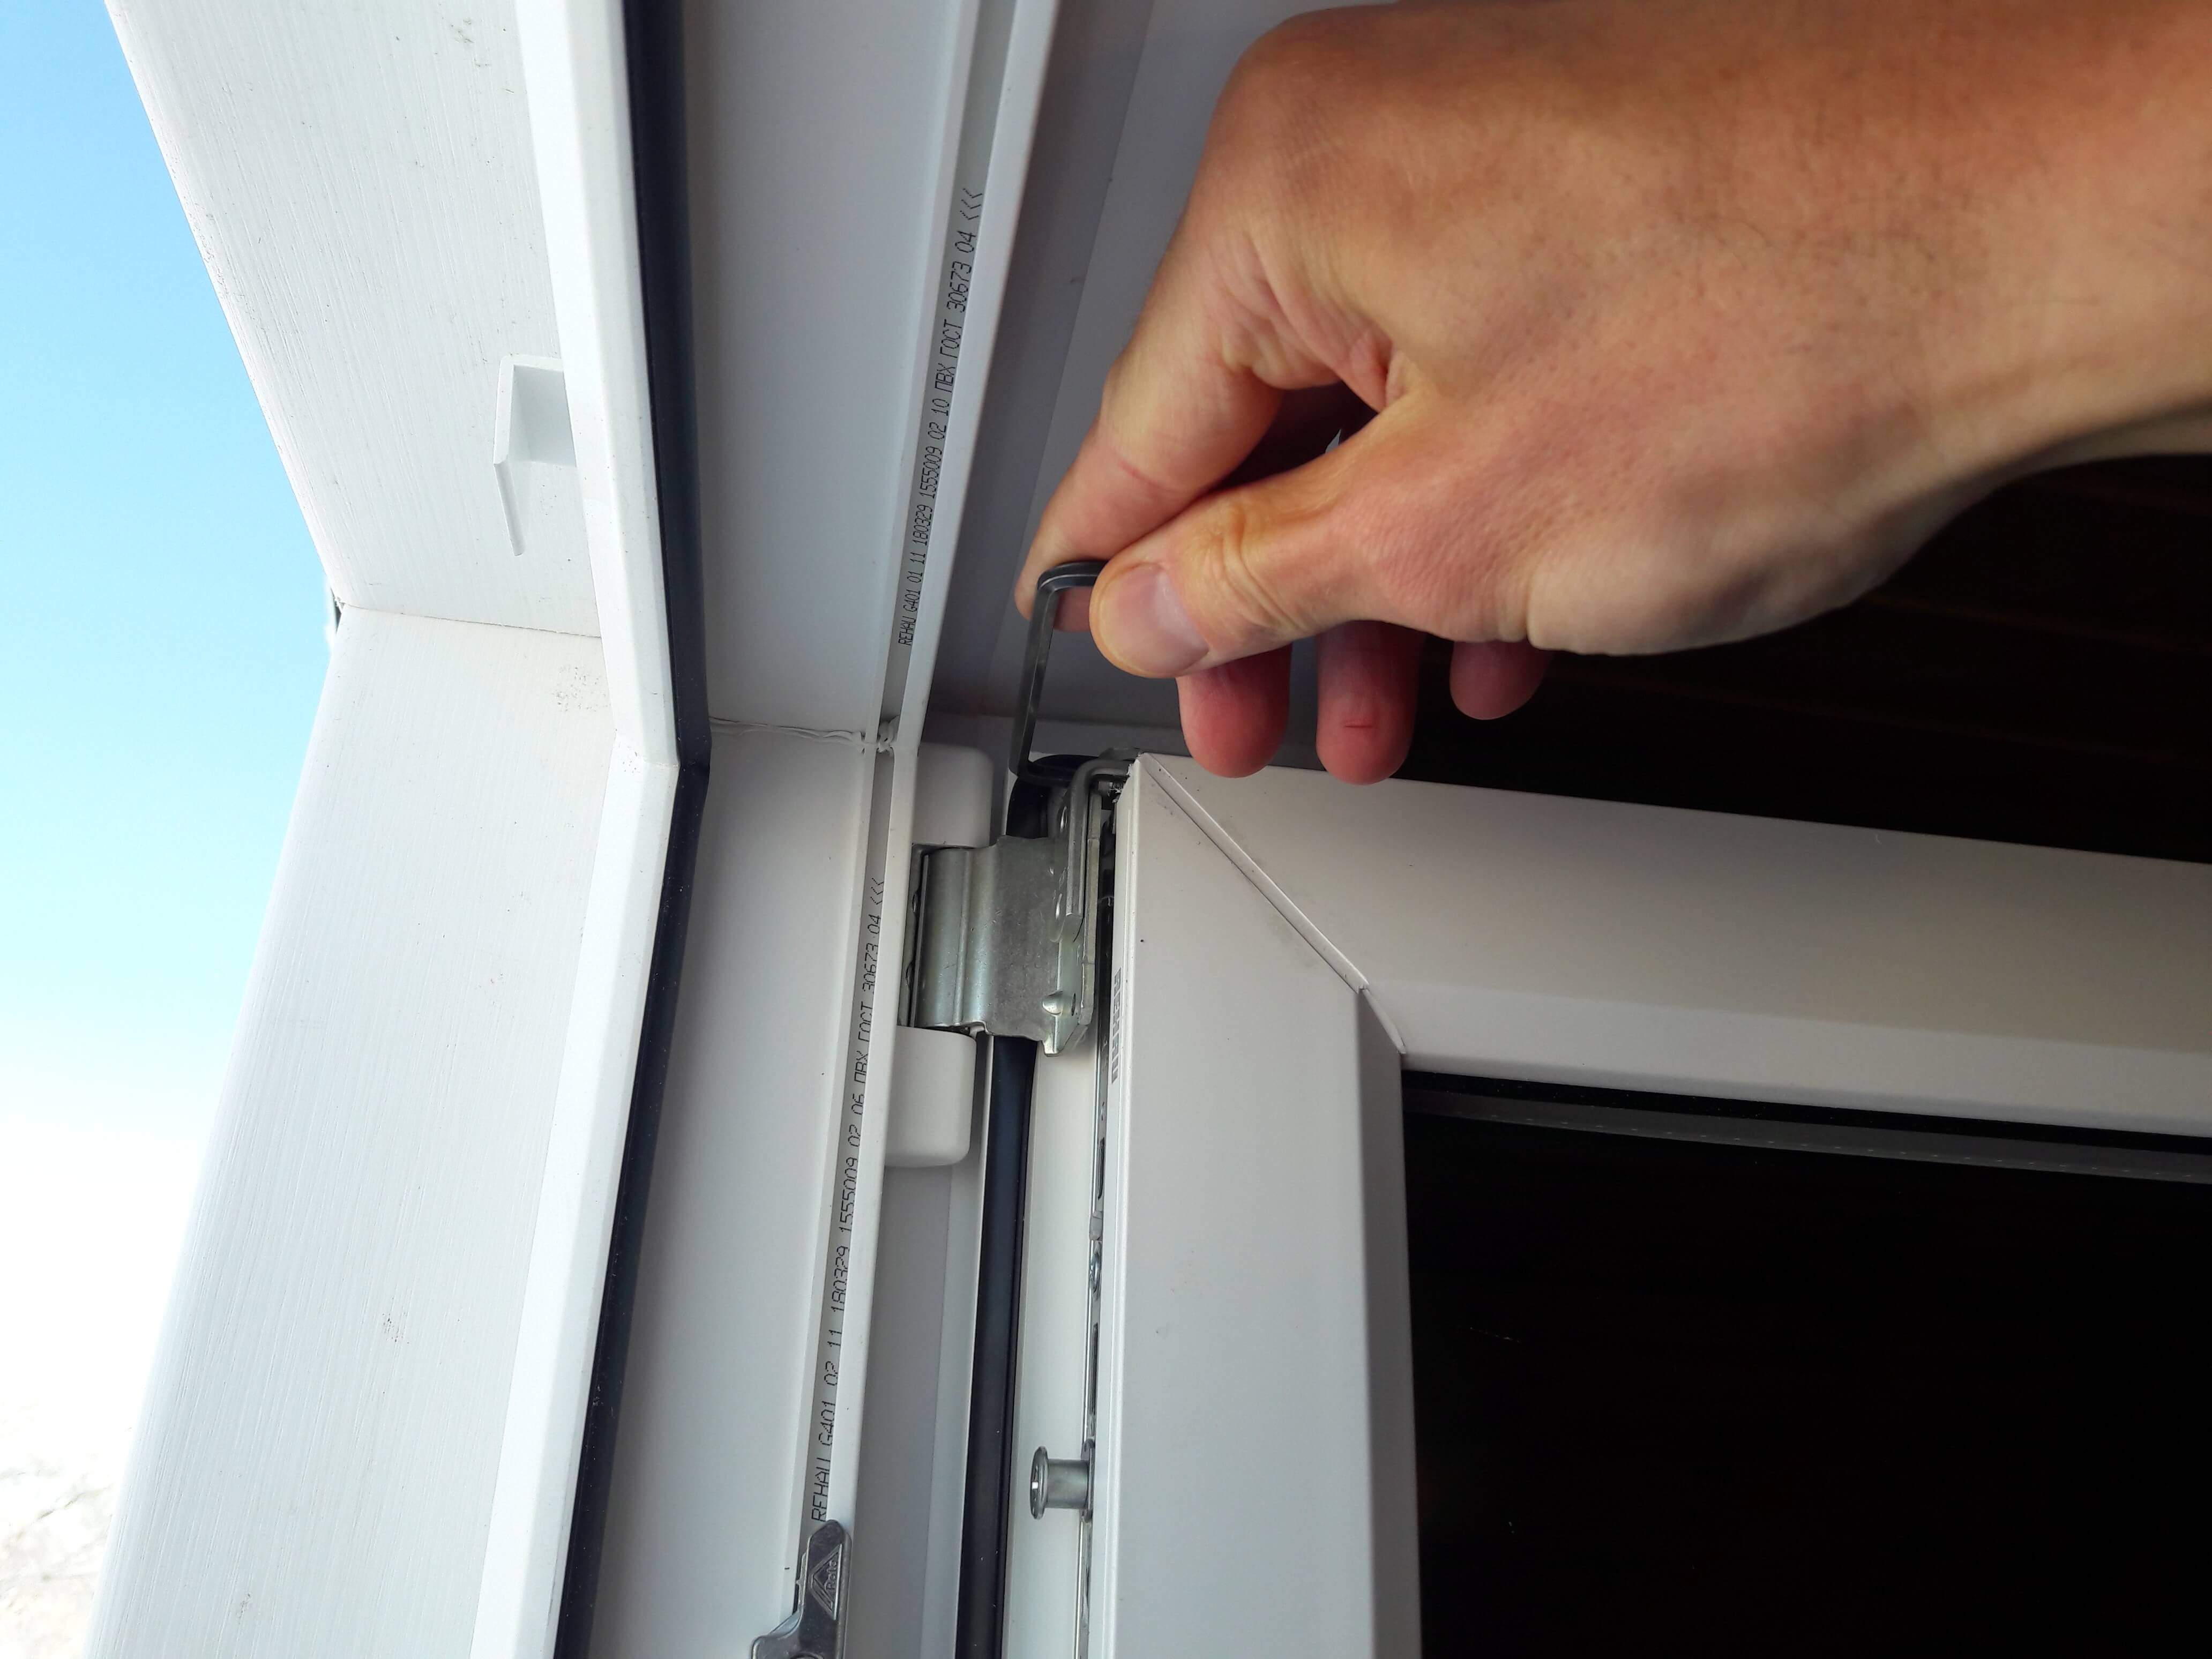 Пластиковые окна ремонт и регулировка спб. Прижим верхней петли пластикового окна саламандер.